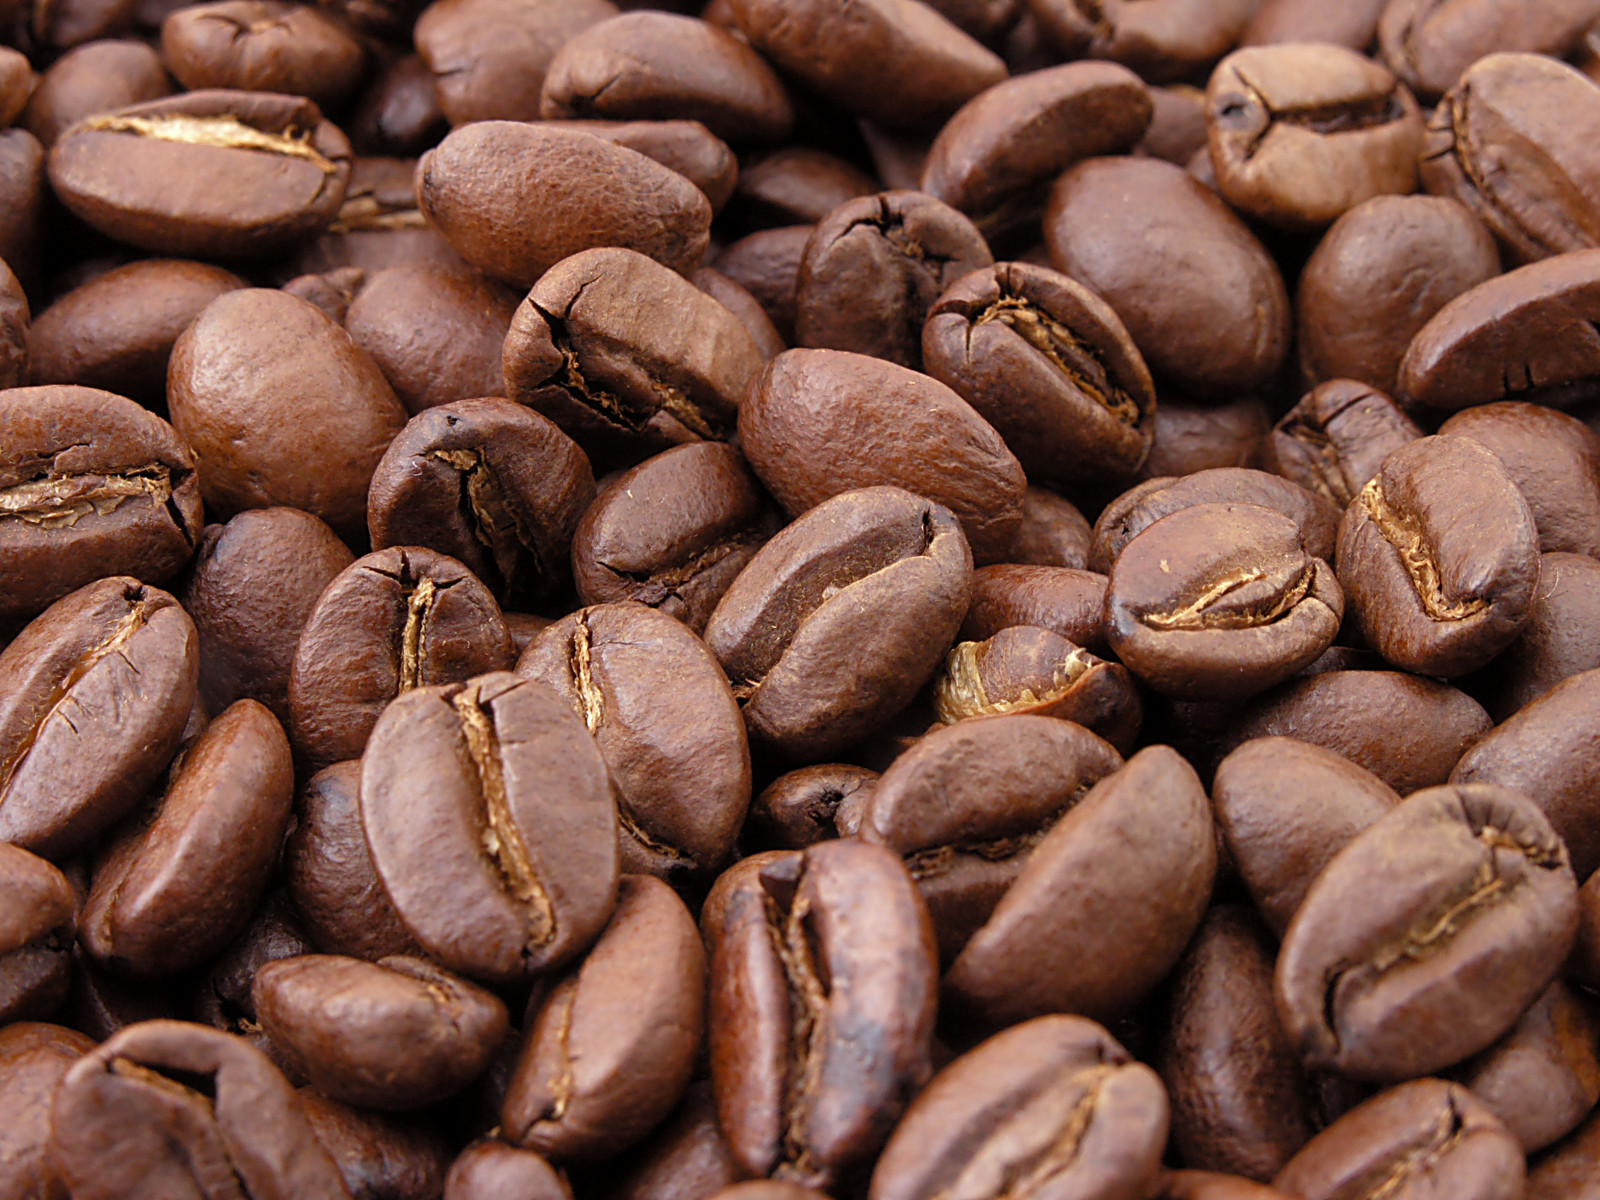 Where Do Coffee Shops Get Their Beans